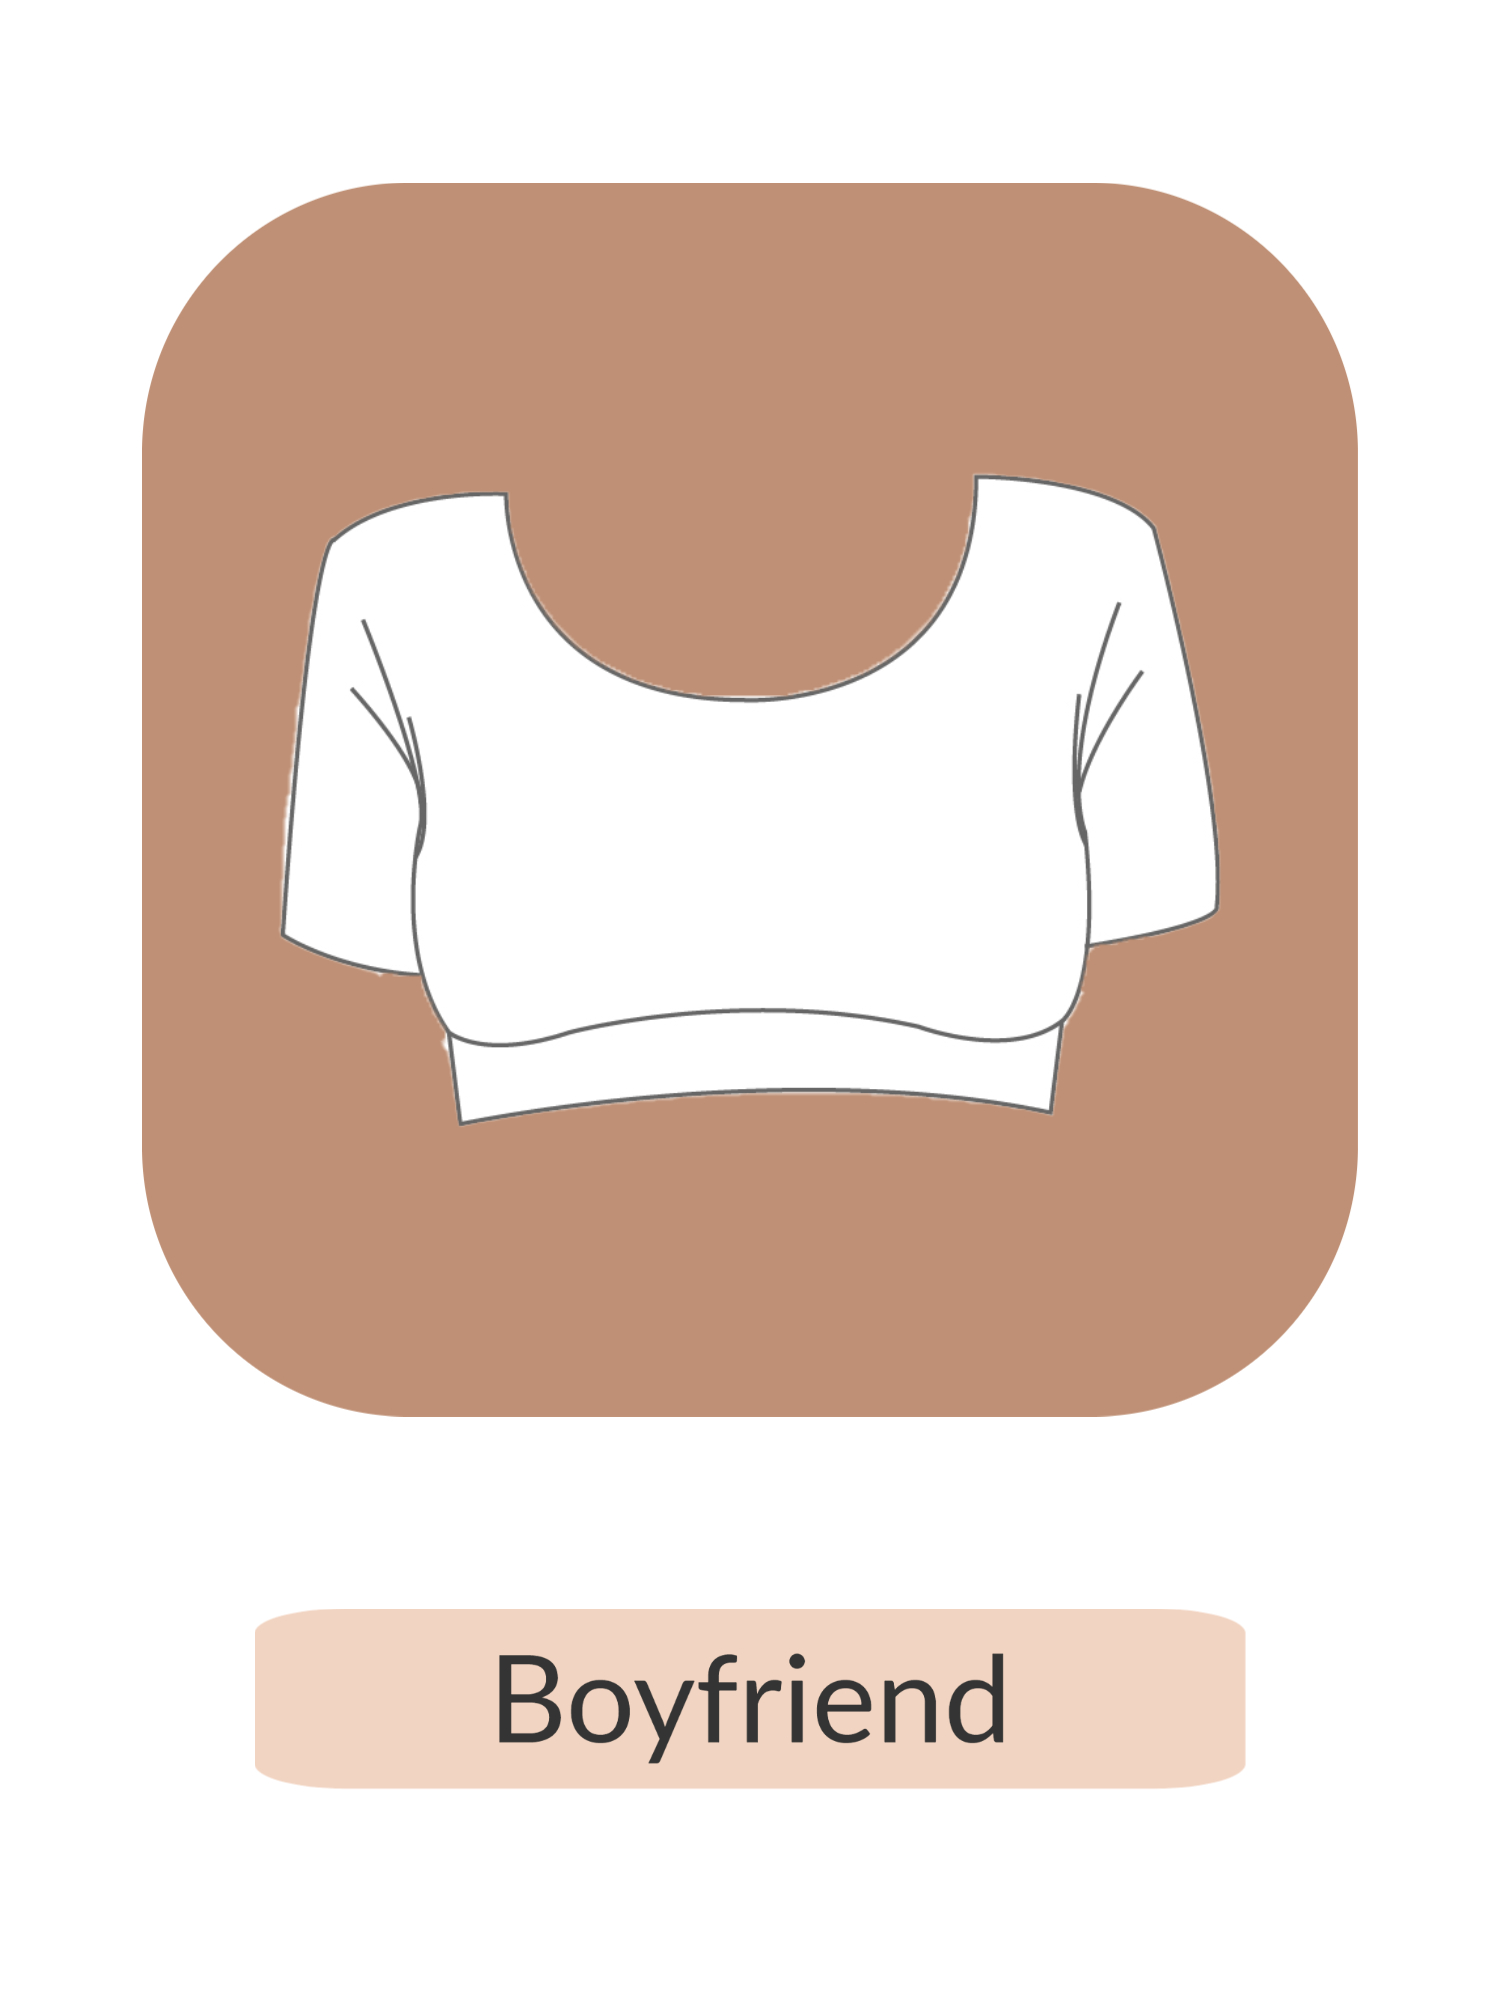 White sleeveless bra top with text 'Boyfriend' on it.